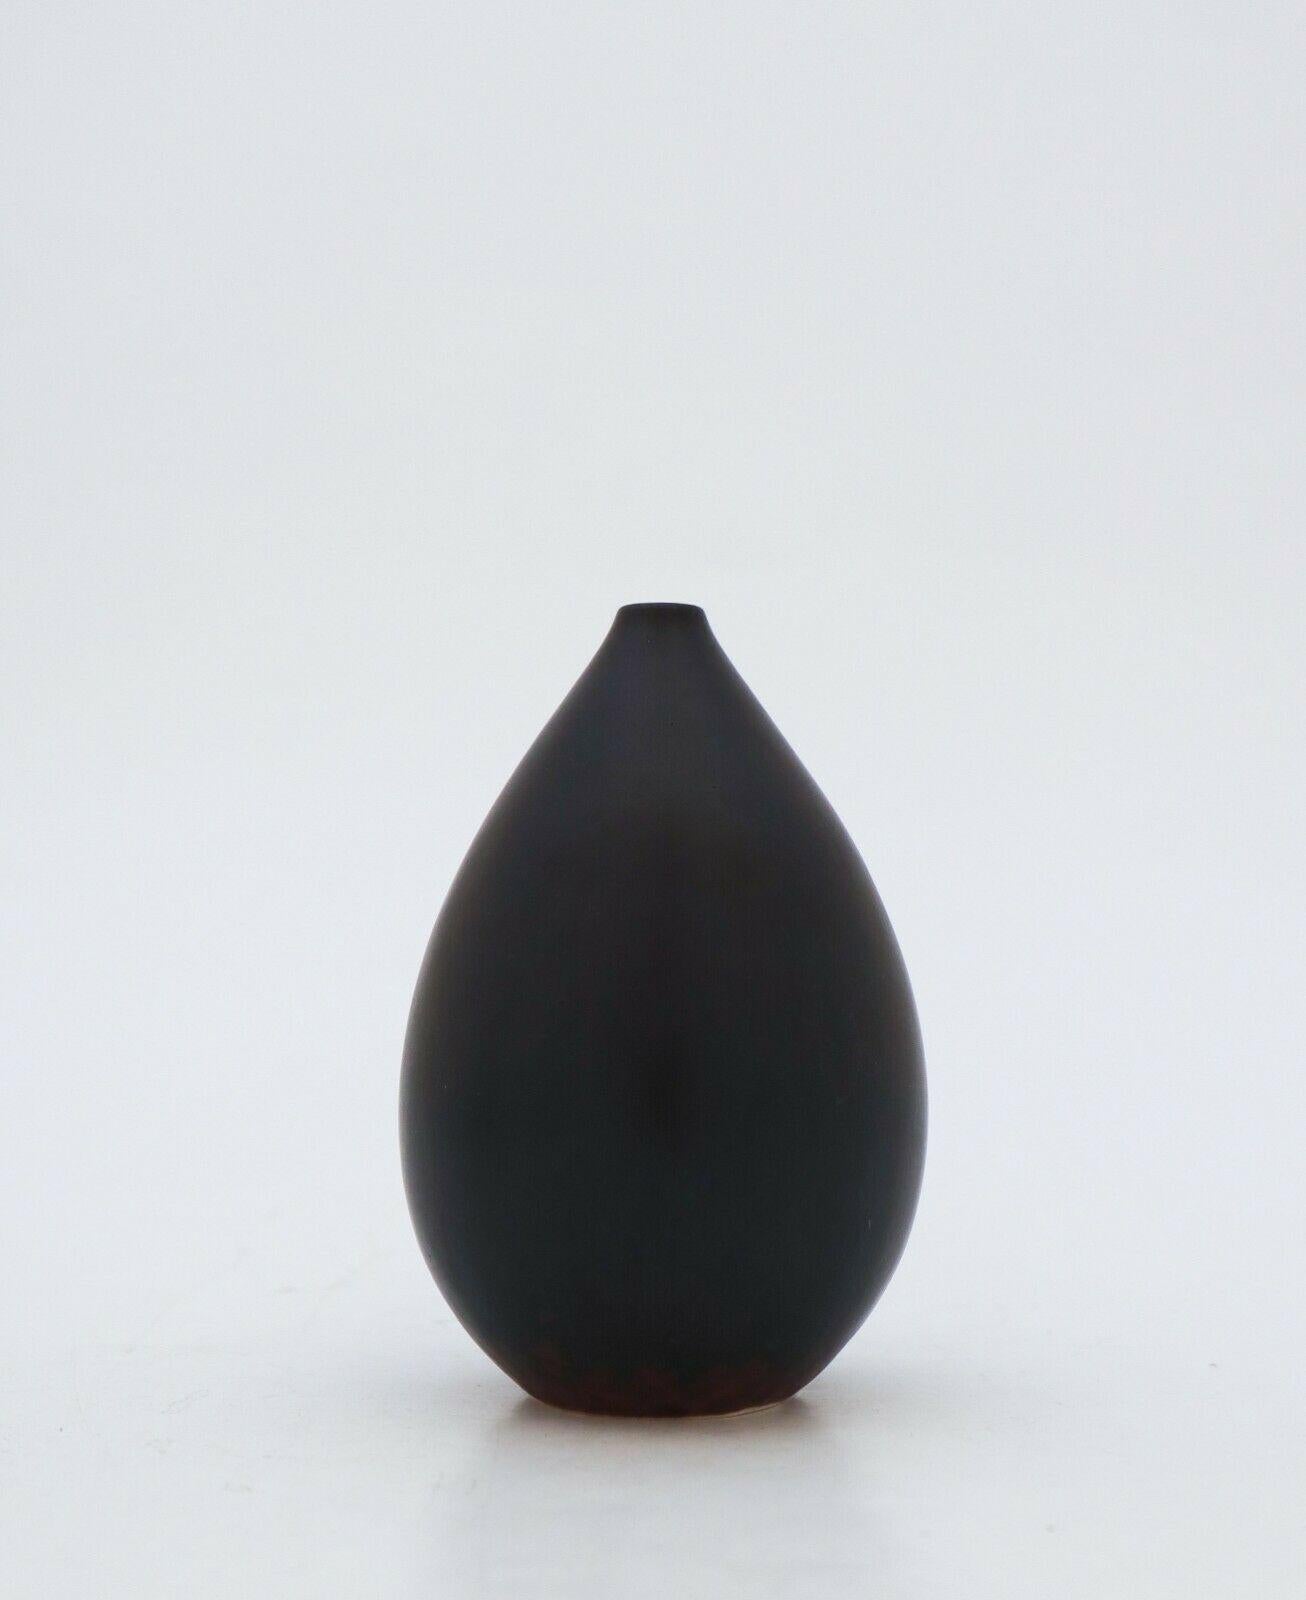 Un vase noir vintage conçu par Carl-Harry Stålhane chez Rörstrand au 20ème siècle, il mesure 10 cm de haut et est en parfait état. Il est marqué comme étant de 1ère qualité. 

Carl-Harry Stålhane est l'un des grands noms de la céramique scandinave